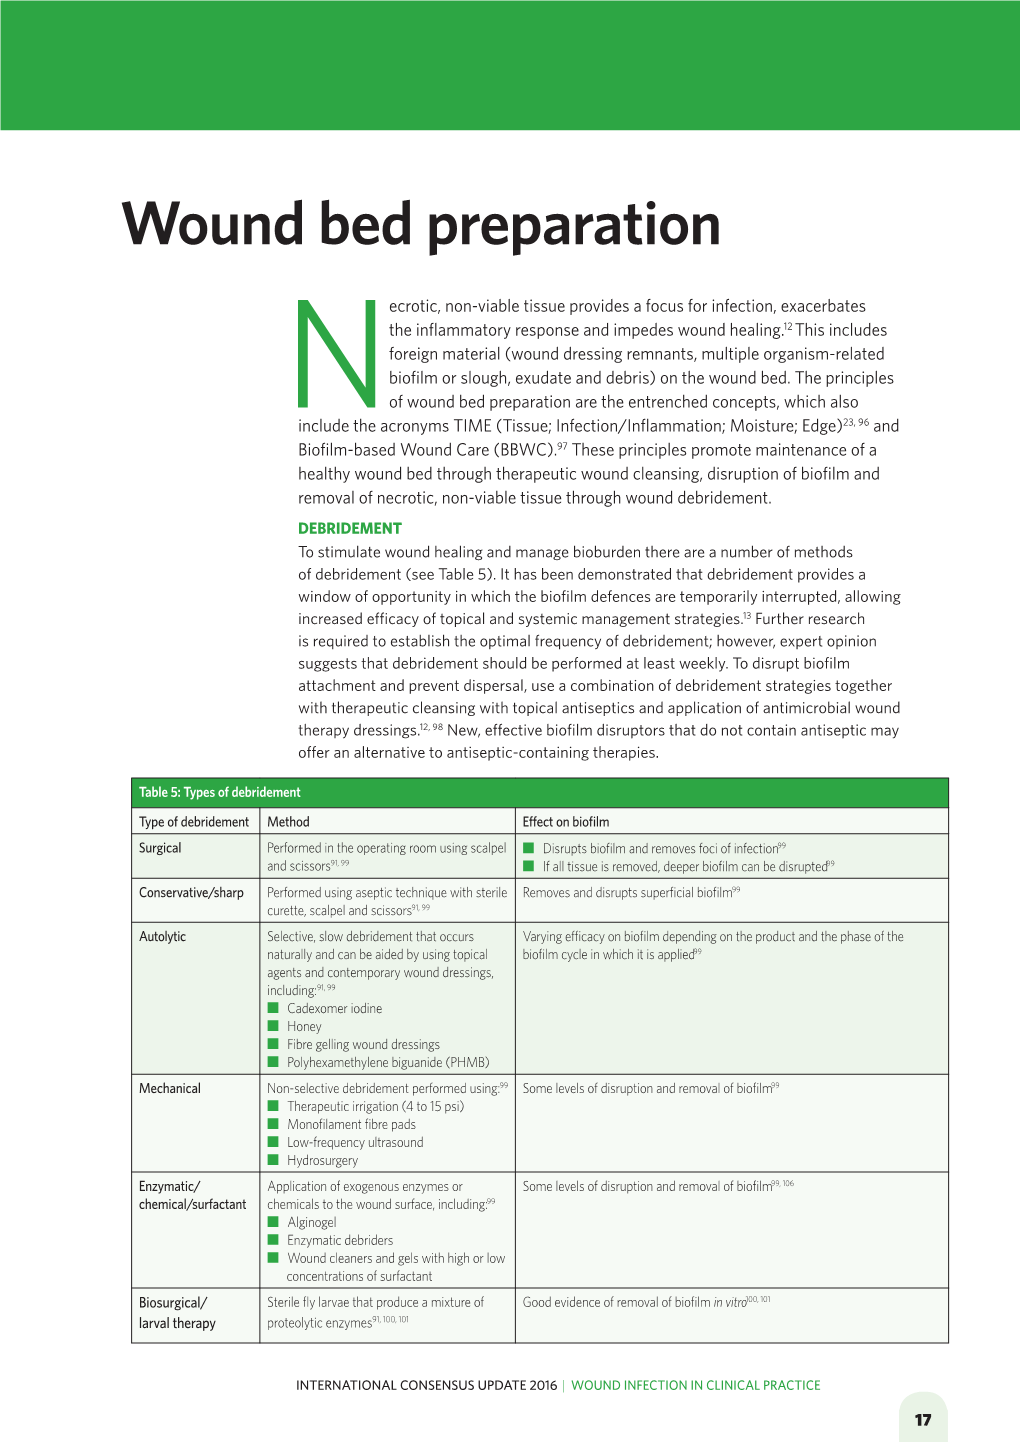 Wound Bed Preparation